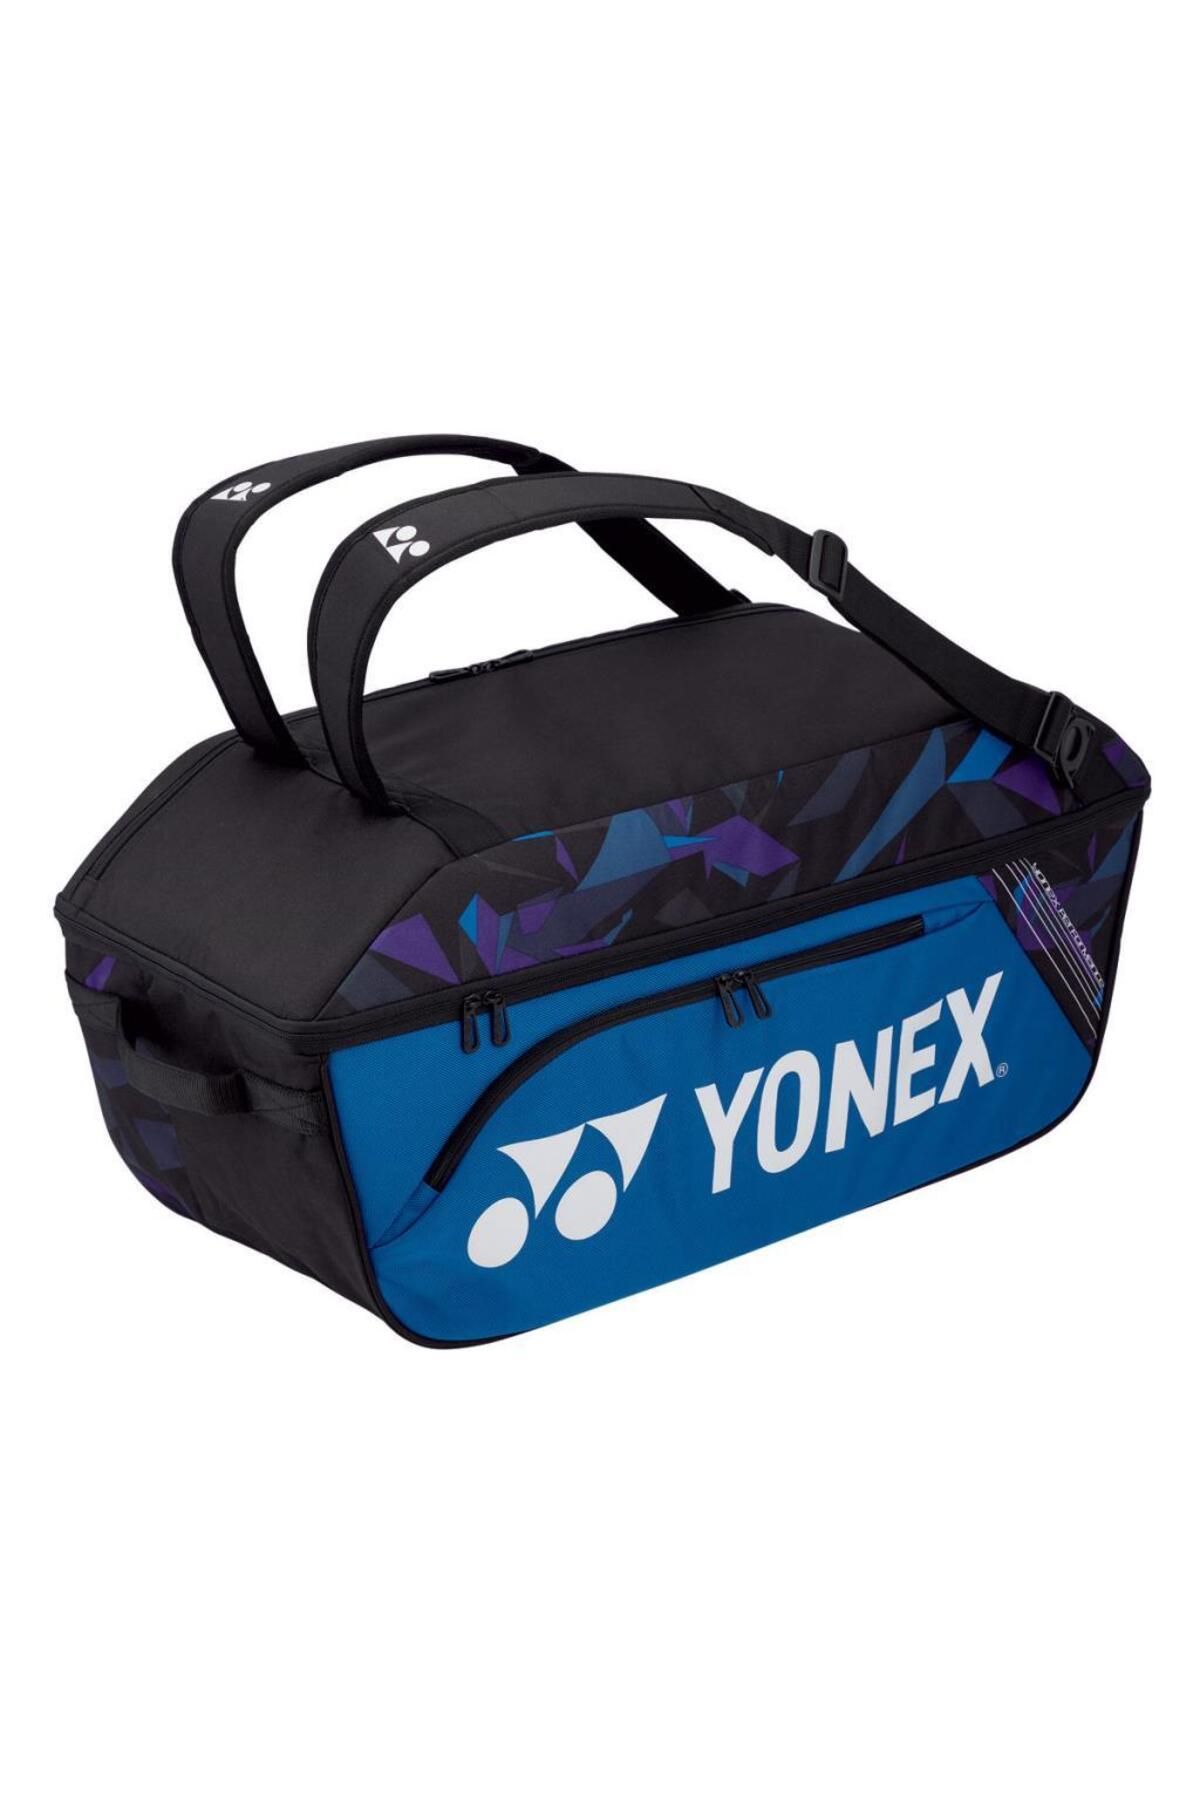 Yonex Pro 92214 Wide Open Mavi Tenis Çantası